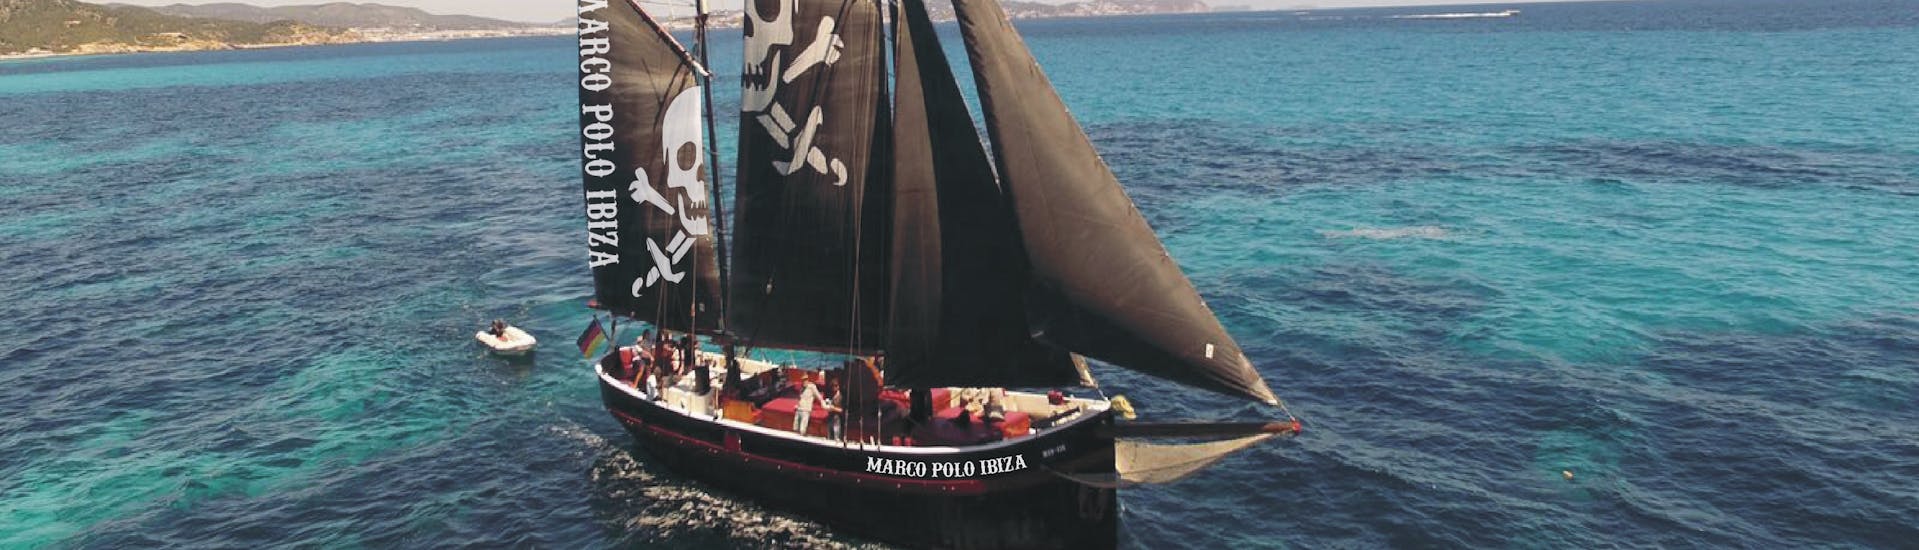 Notre bateau pirate navigue sur la mer lors de la Balade privée en bateau pirate à Formentera avec Apéritif & Snorkeling avec Marco Polo Ibiza.